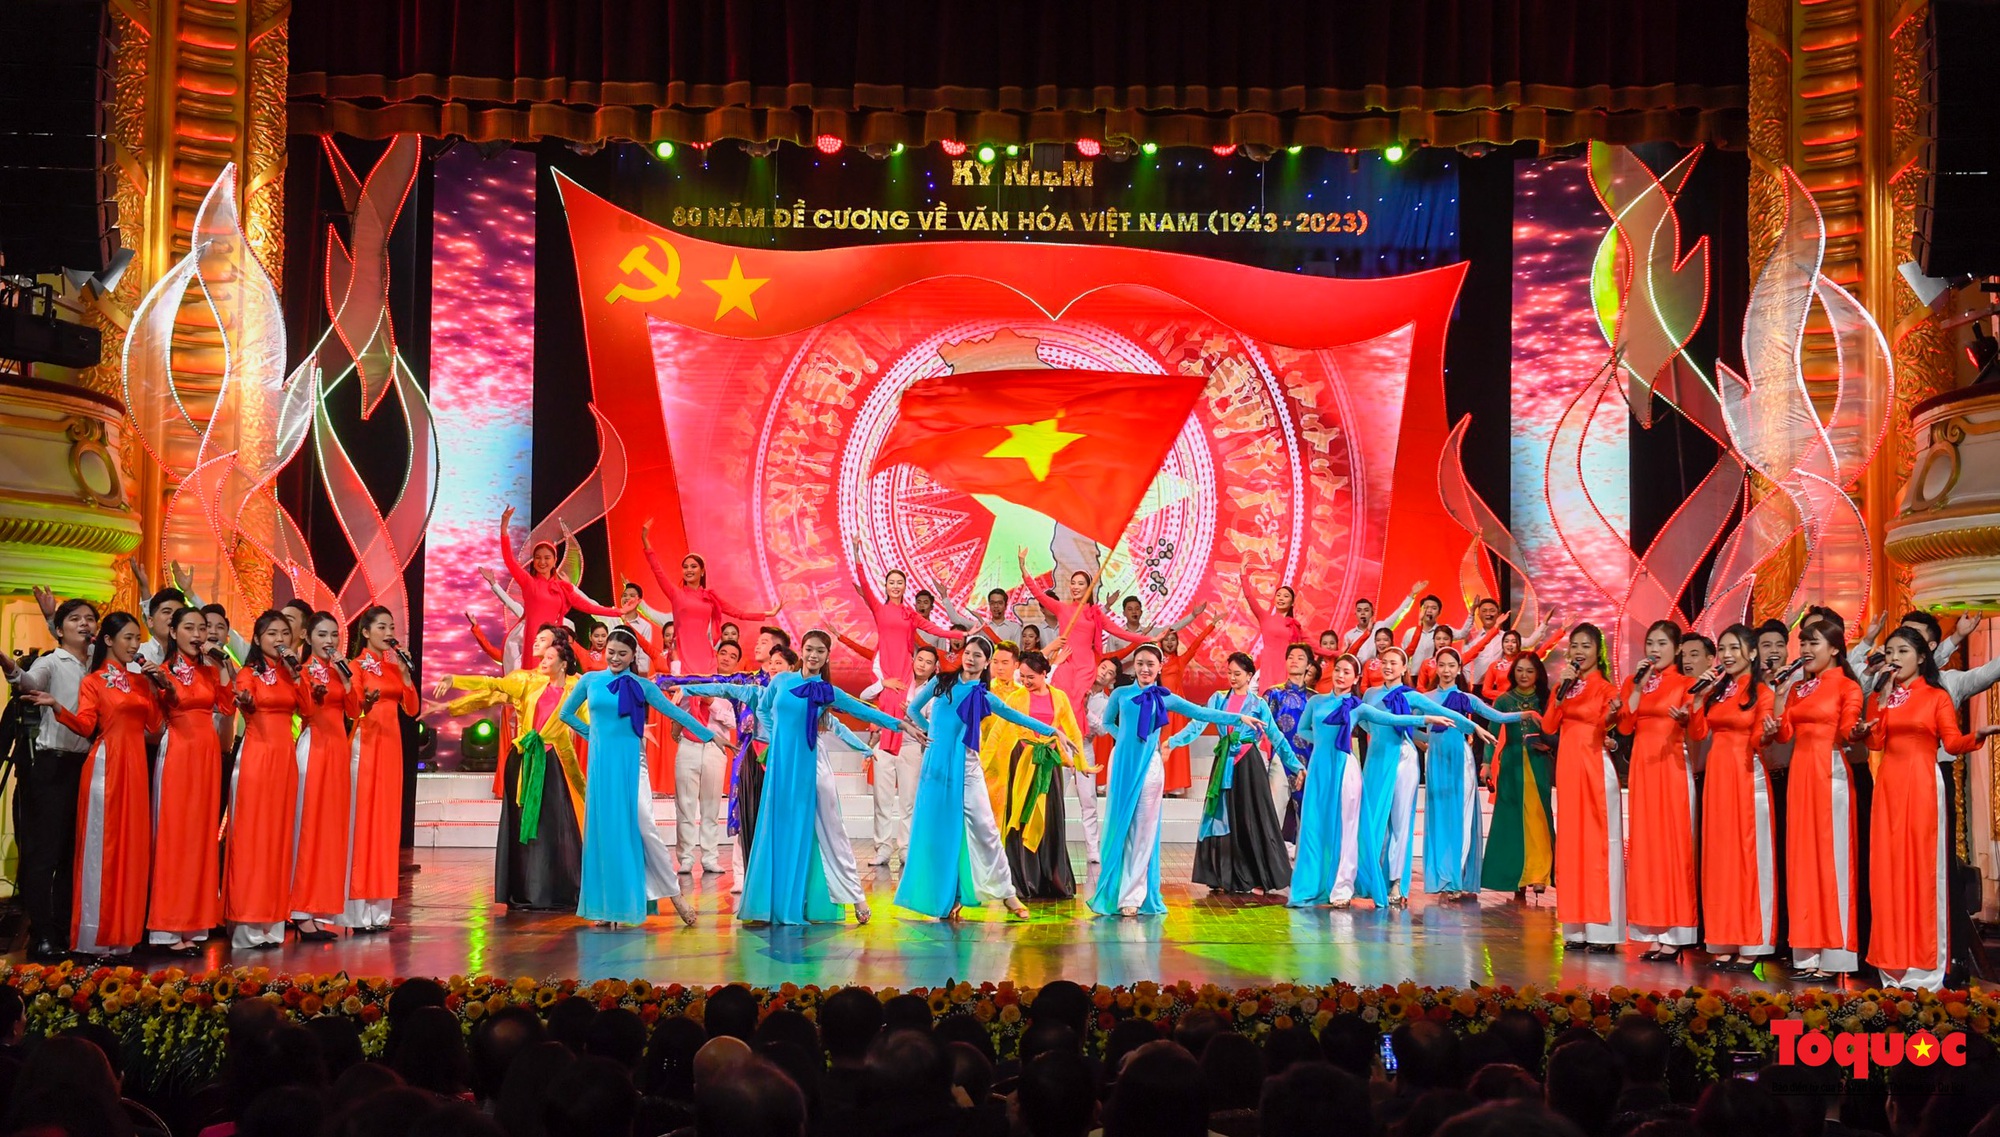 Chùm ảnh: Lễ kỷ niệm và chương trình nghệ thuật đặc biệt kỷ niệm 80 năm ra đời Đề cương văn hóa Việt Nam - Ảnh 4.